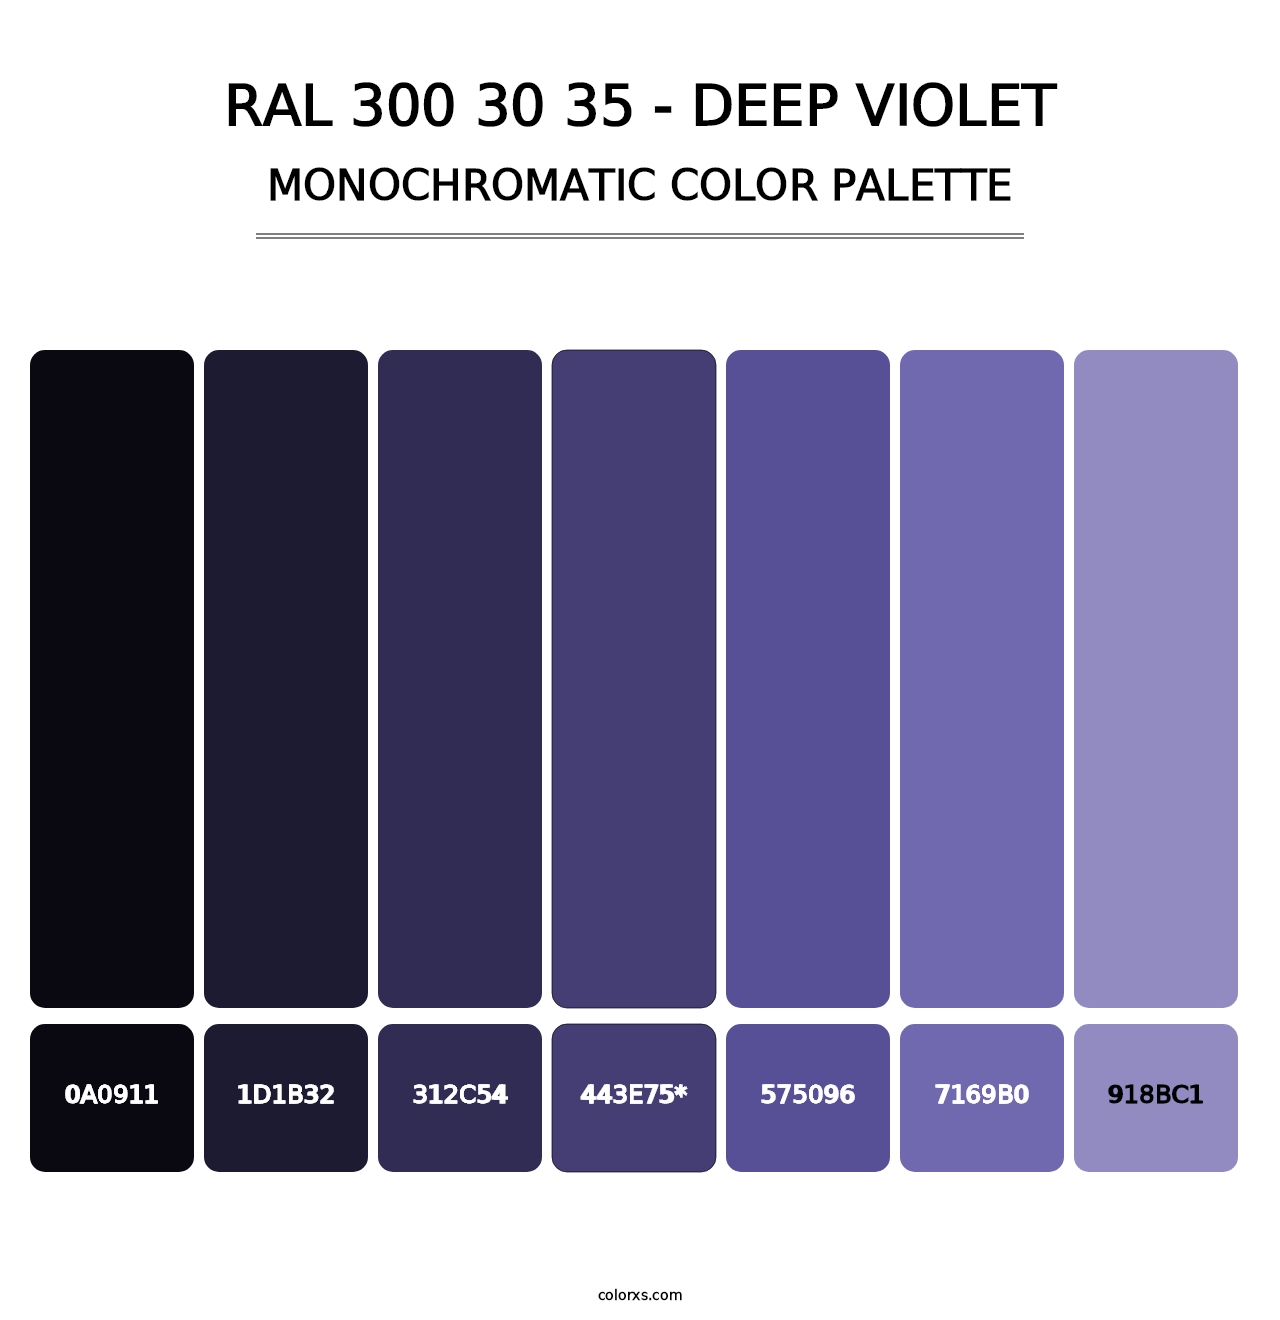 RAL 300 30 35 - Deep Violet - Monochromatic Color Palette